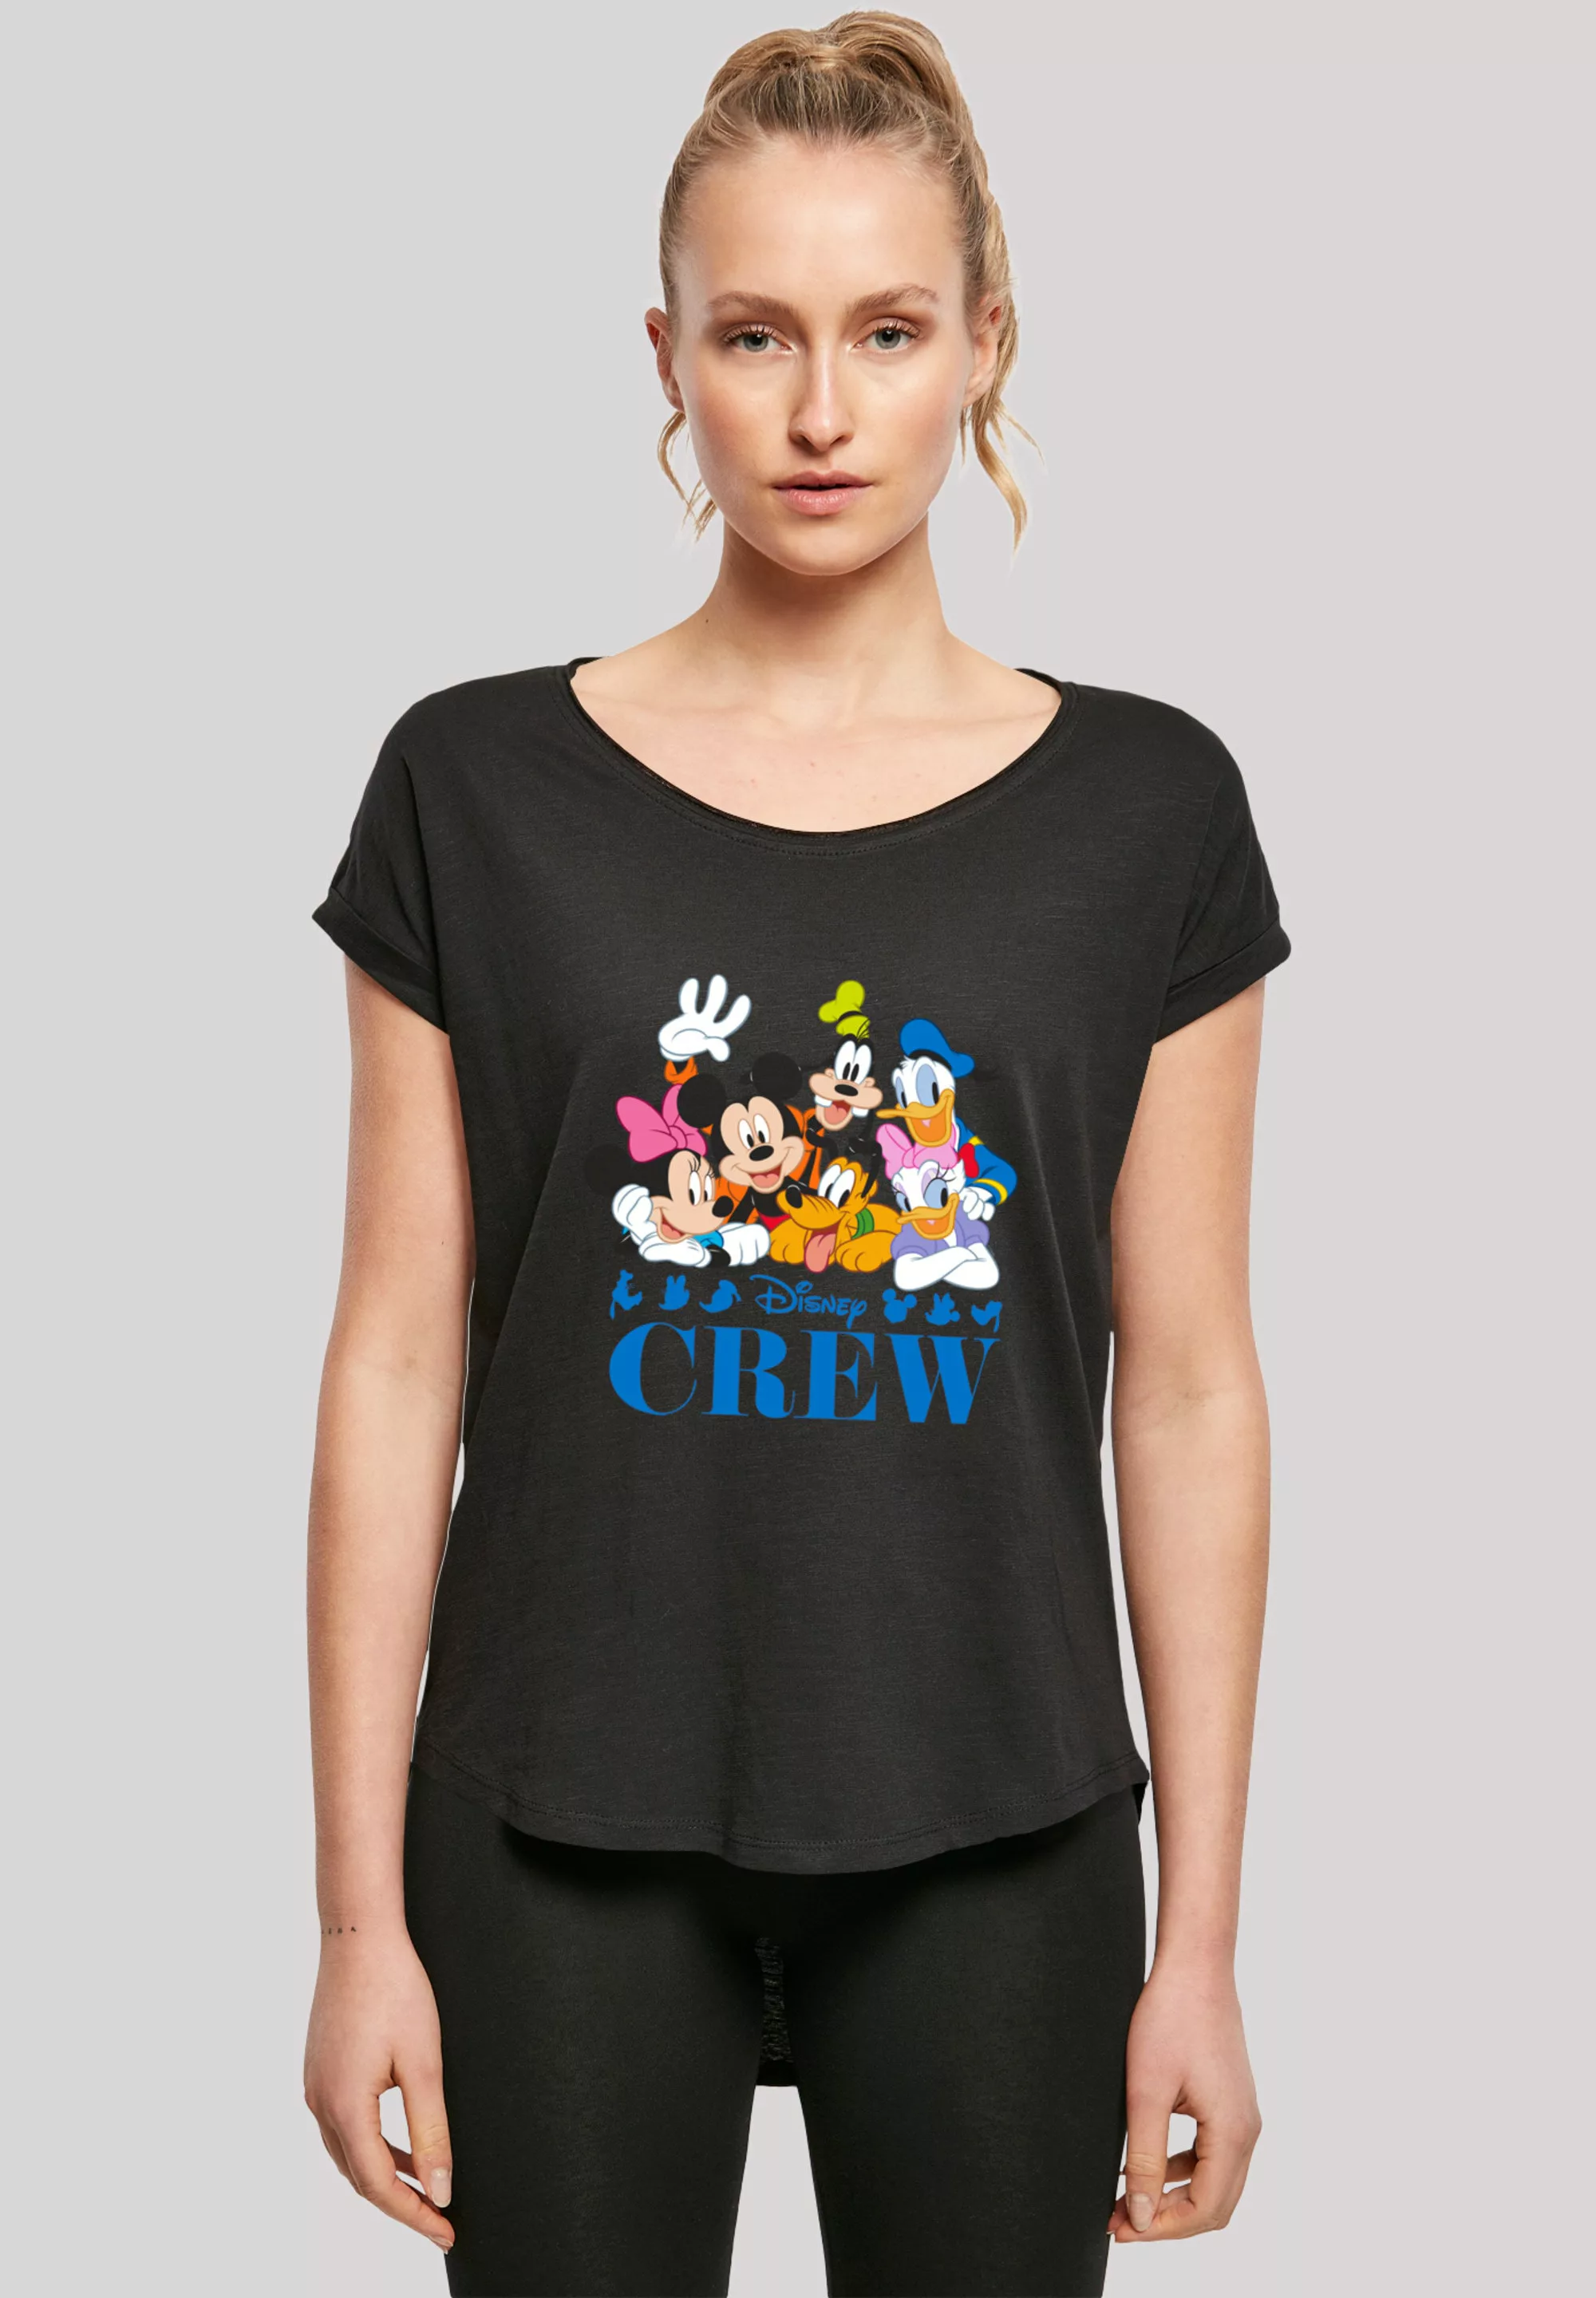 F4NT4STIC T-Shirt "Die Drei Kleinen Schweinchen", Print günstig online kaufen